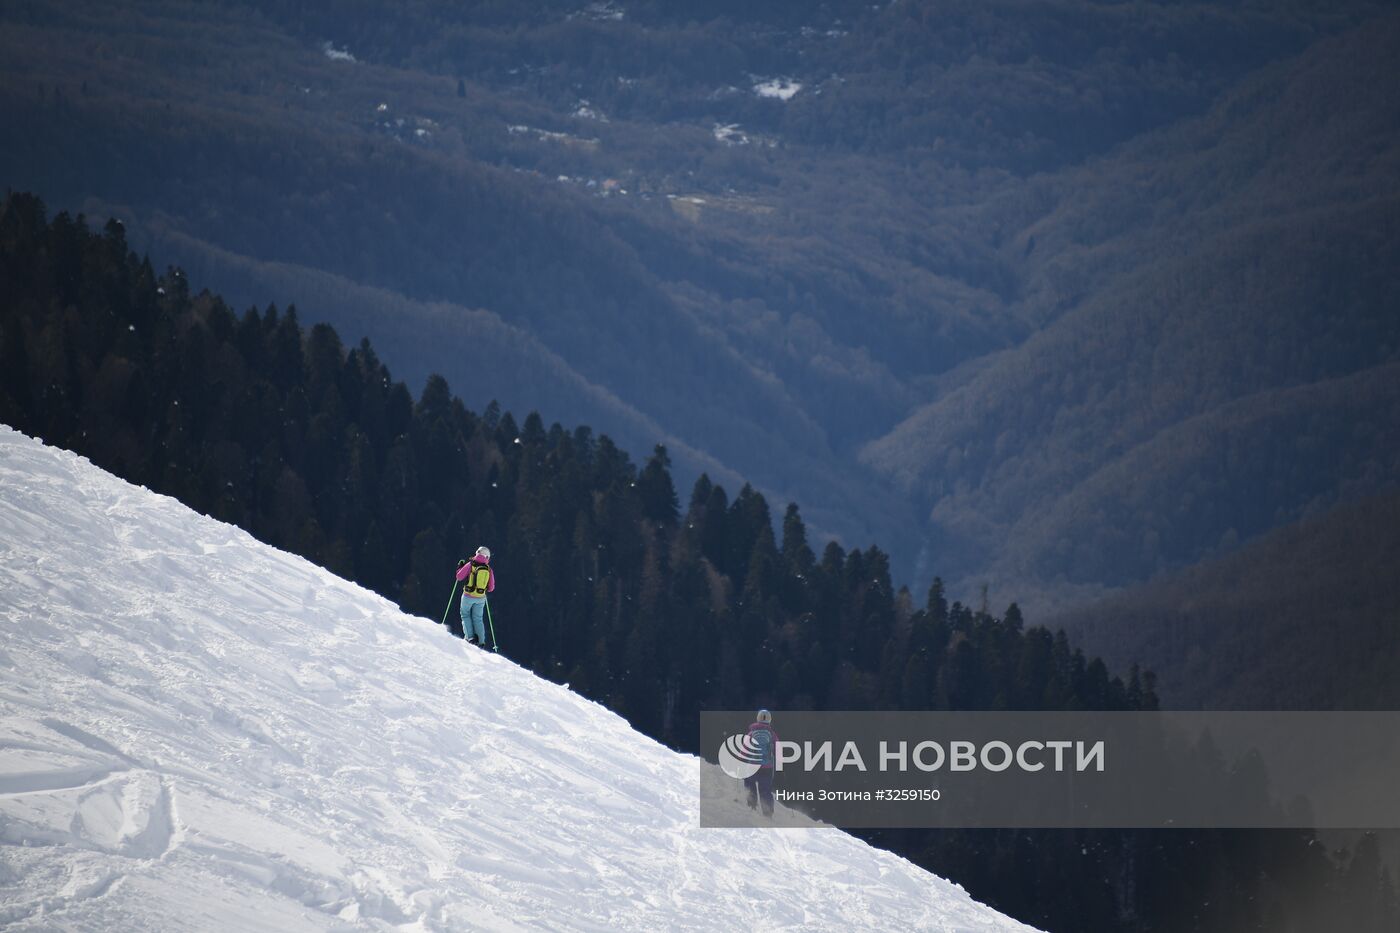 Открытие сезона на горнолыжном курорте "Роза Хутор" в Сочи